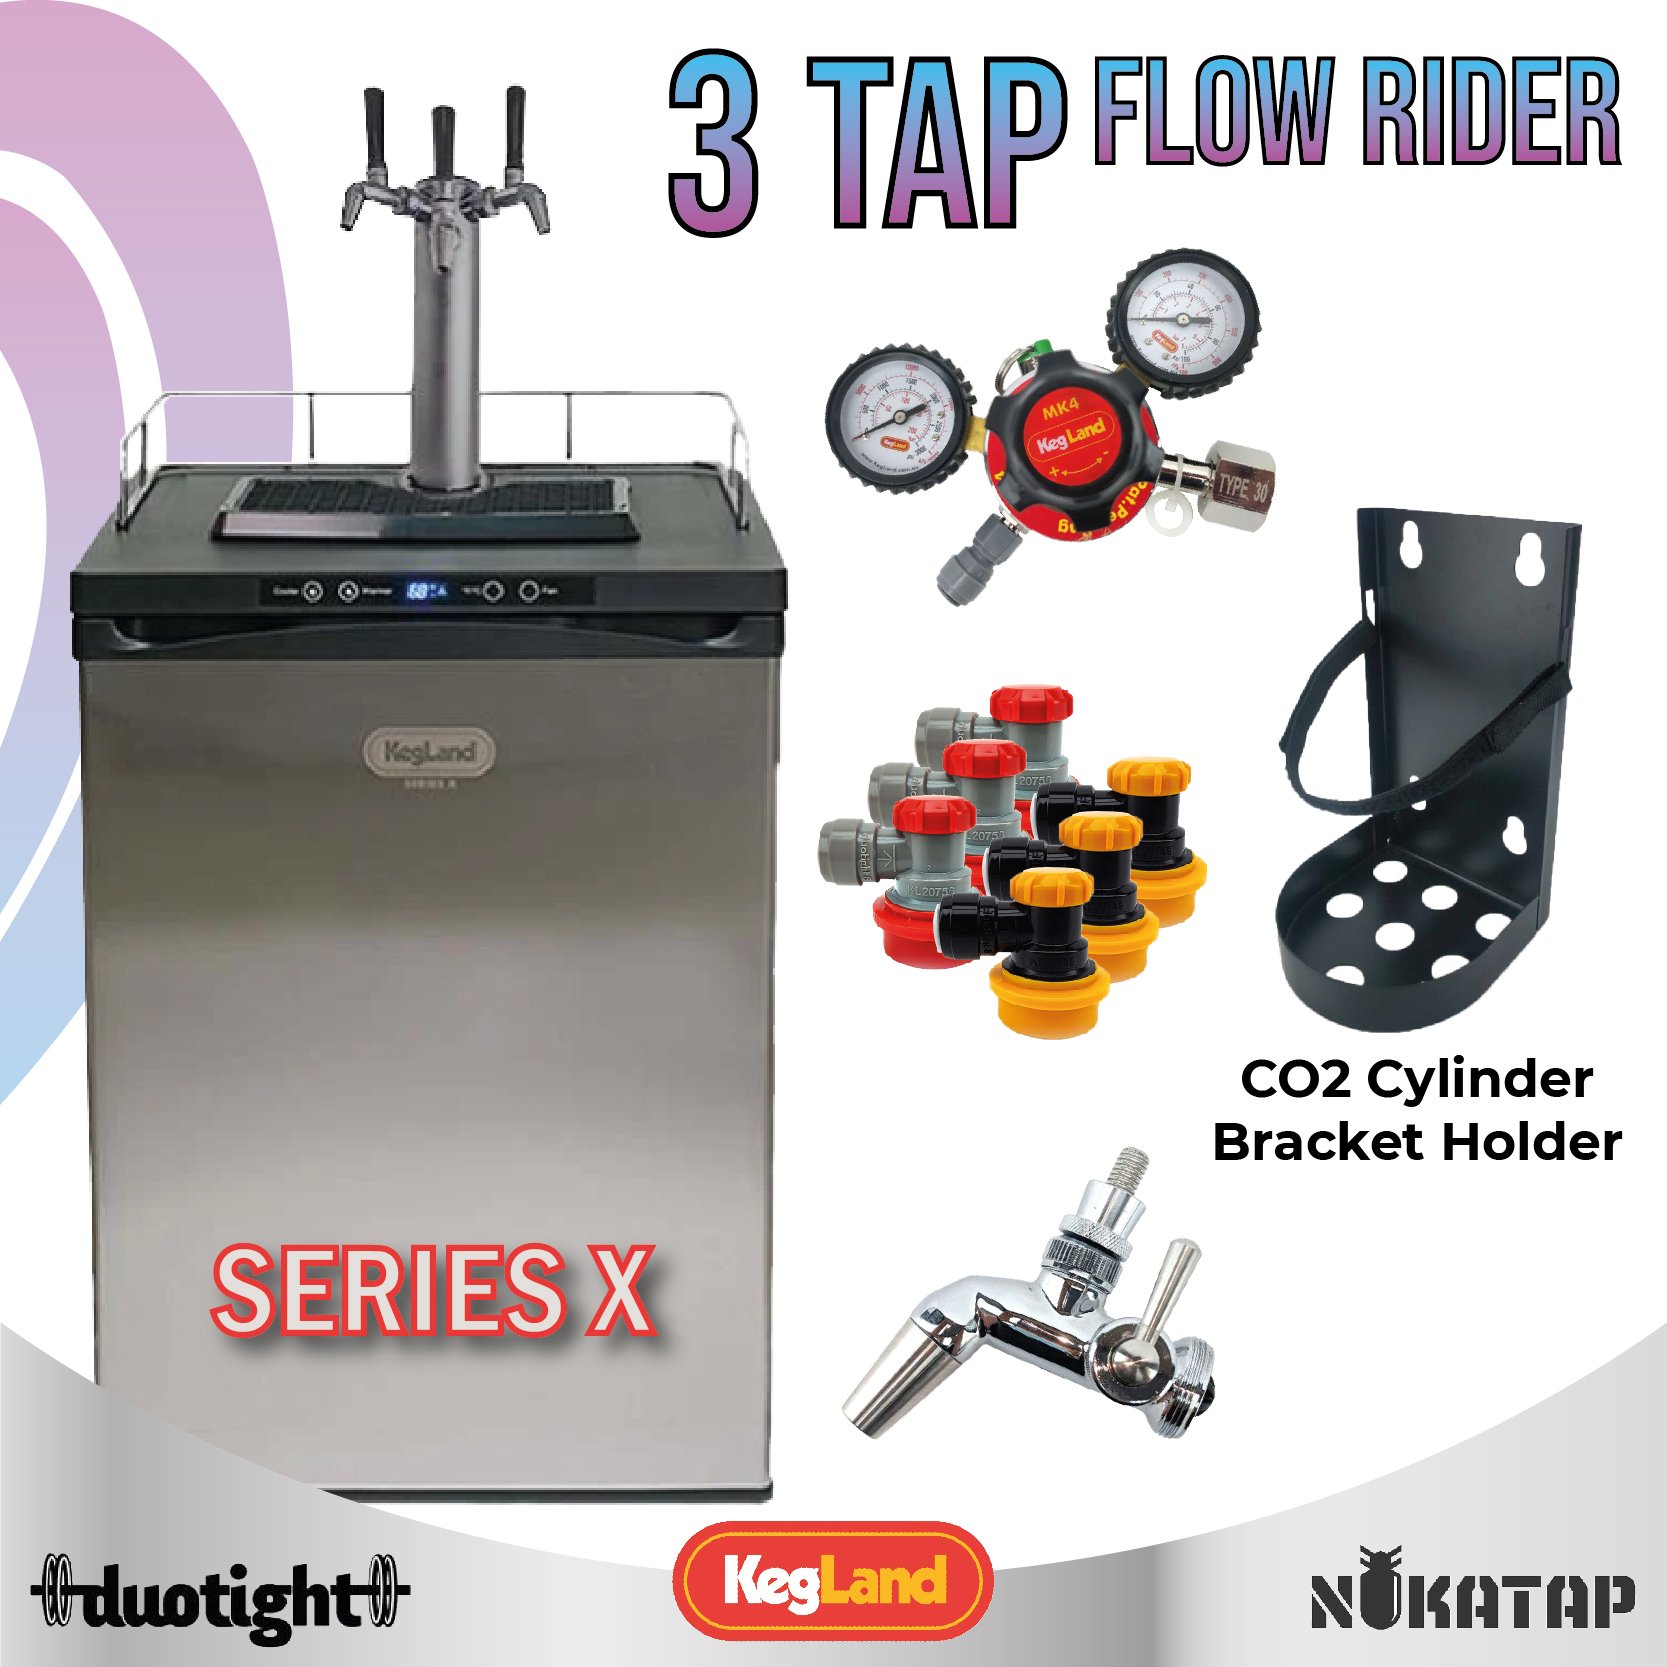 3 Tap Flow Rider set